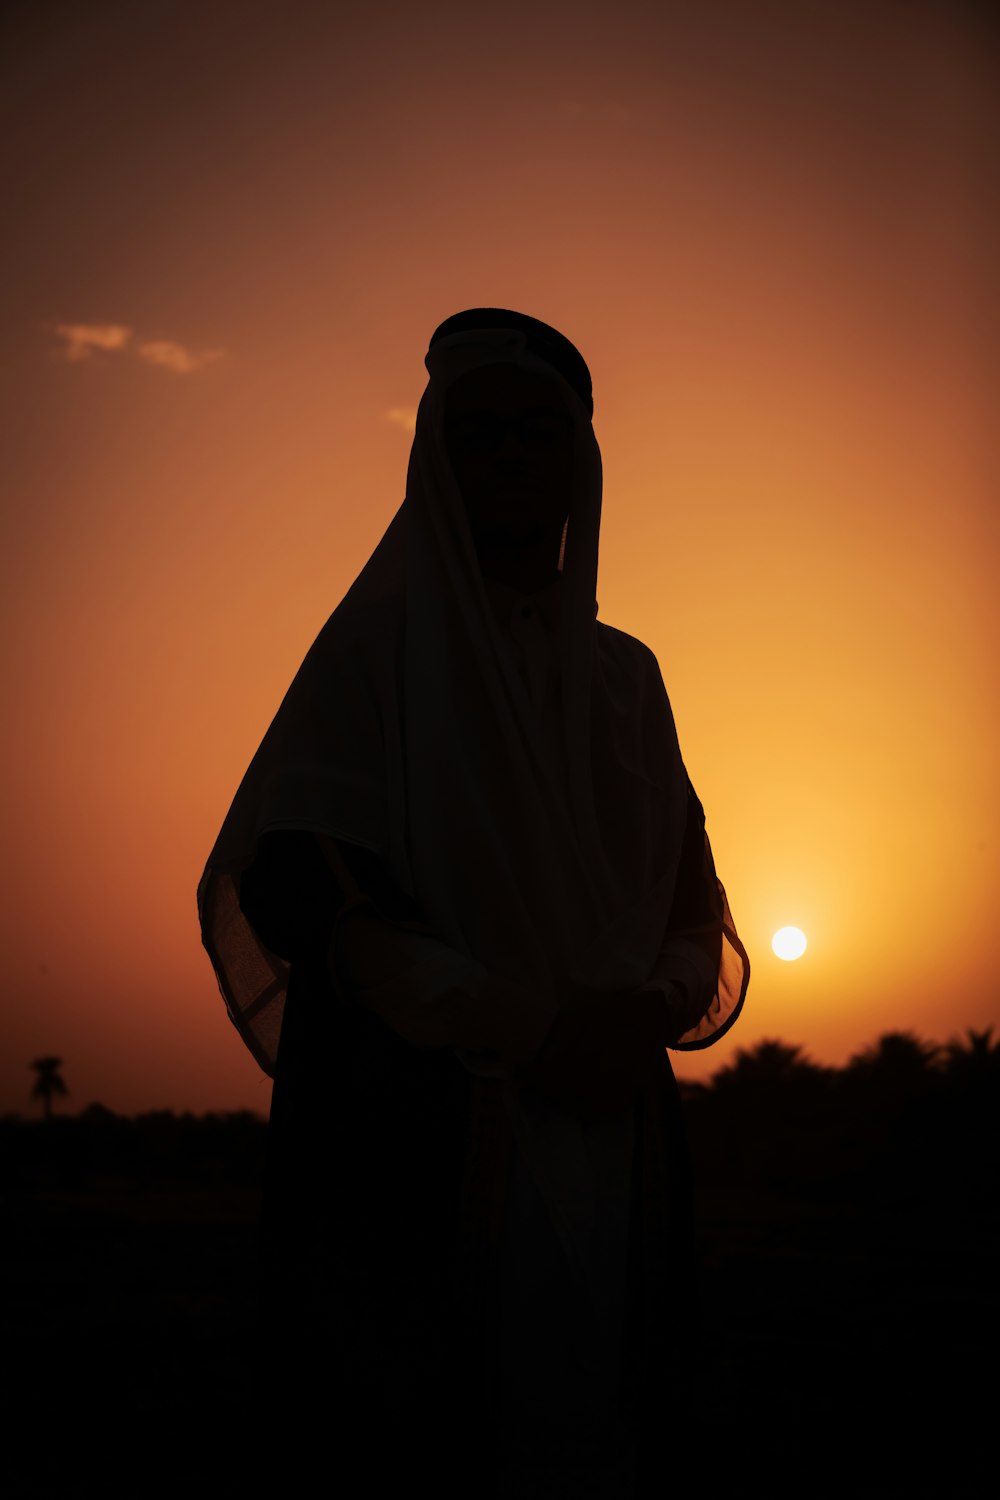 eine Silhouette einer Person, die bei Sonnenuntergang einen Schleier trägt